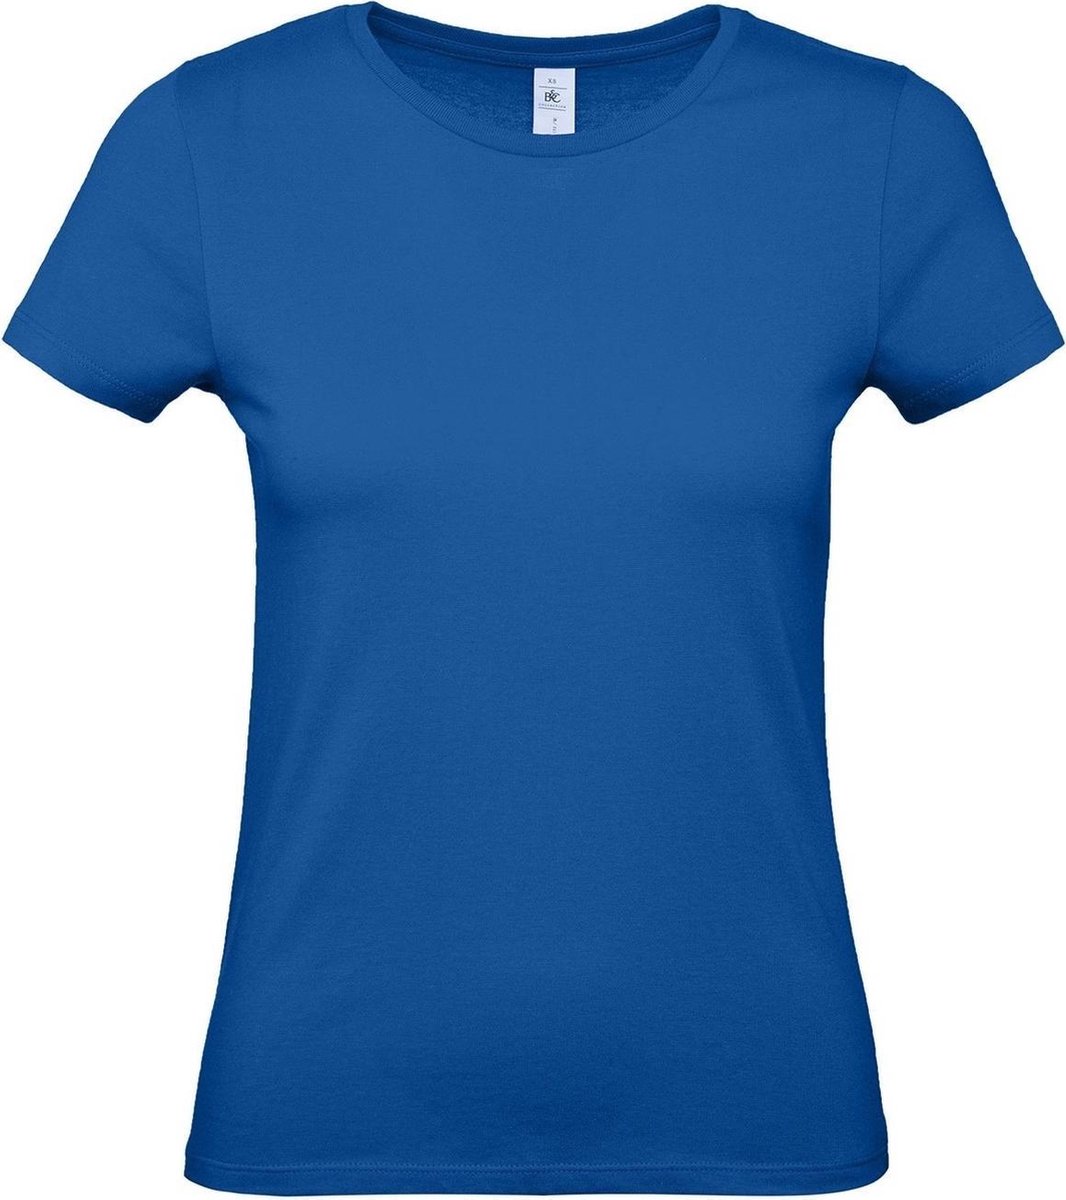 Set van 3x stuks blauw basic t-shirts met ronde hals voor dames - katoen - 145 grams - blauwe shirts / kleding, maat: M (38)